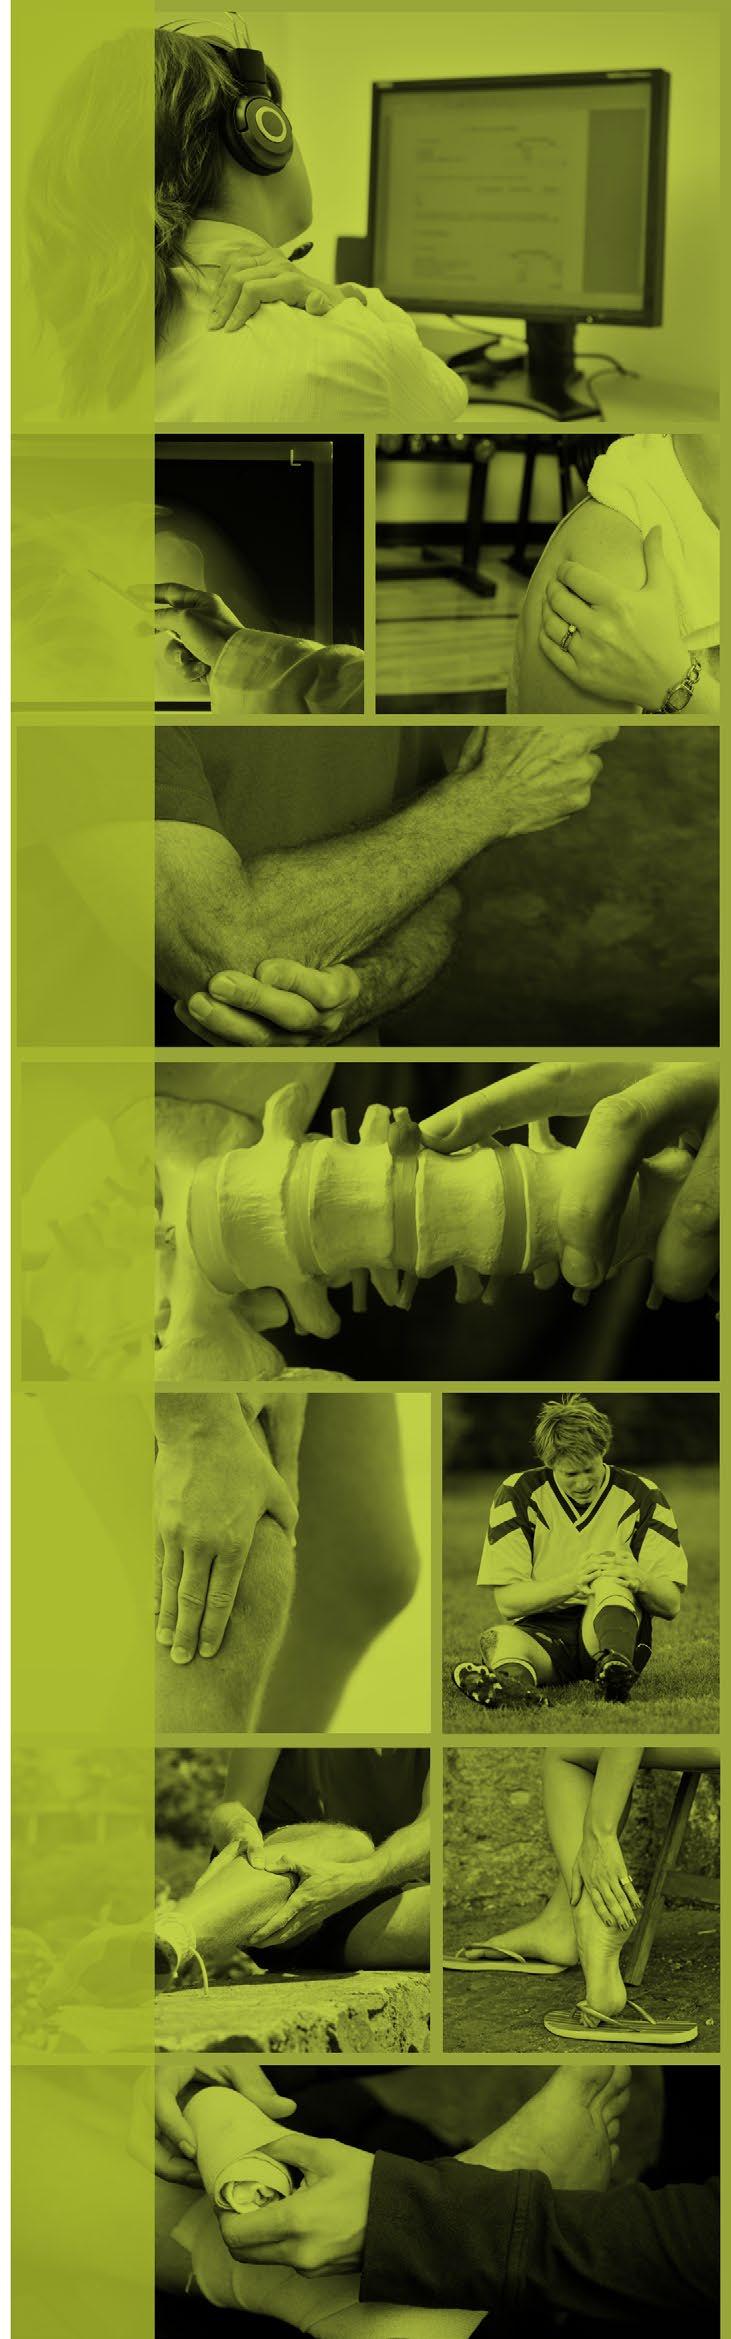 Contents Introduction 3 Neck Pain 7 Shoulder Pain - Gradual Onset 9 Shoulder Pain Acute onset 11 Elbow Pain 13